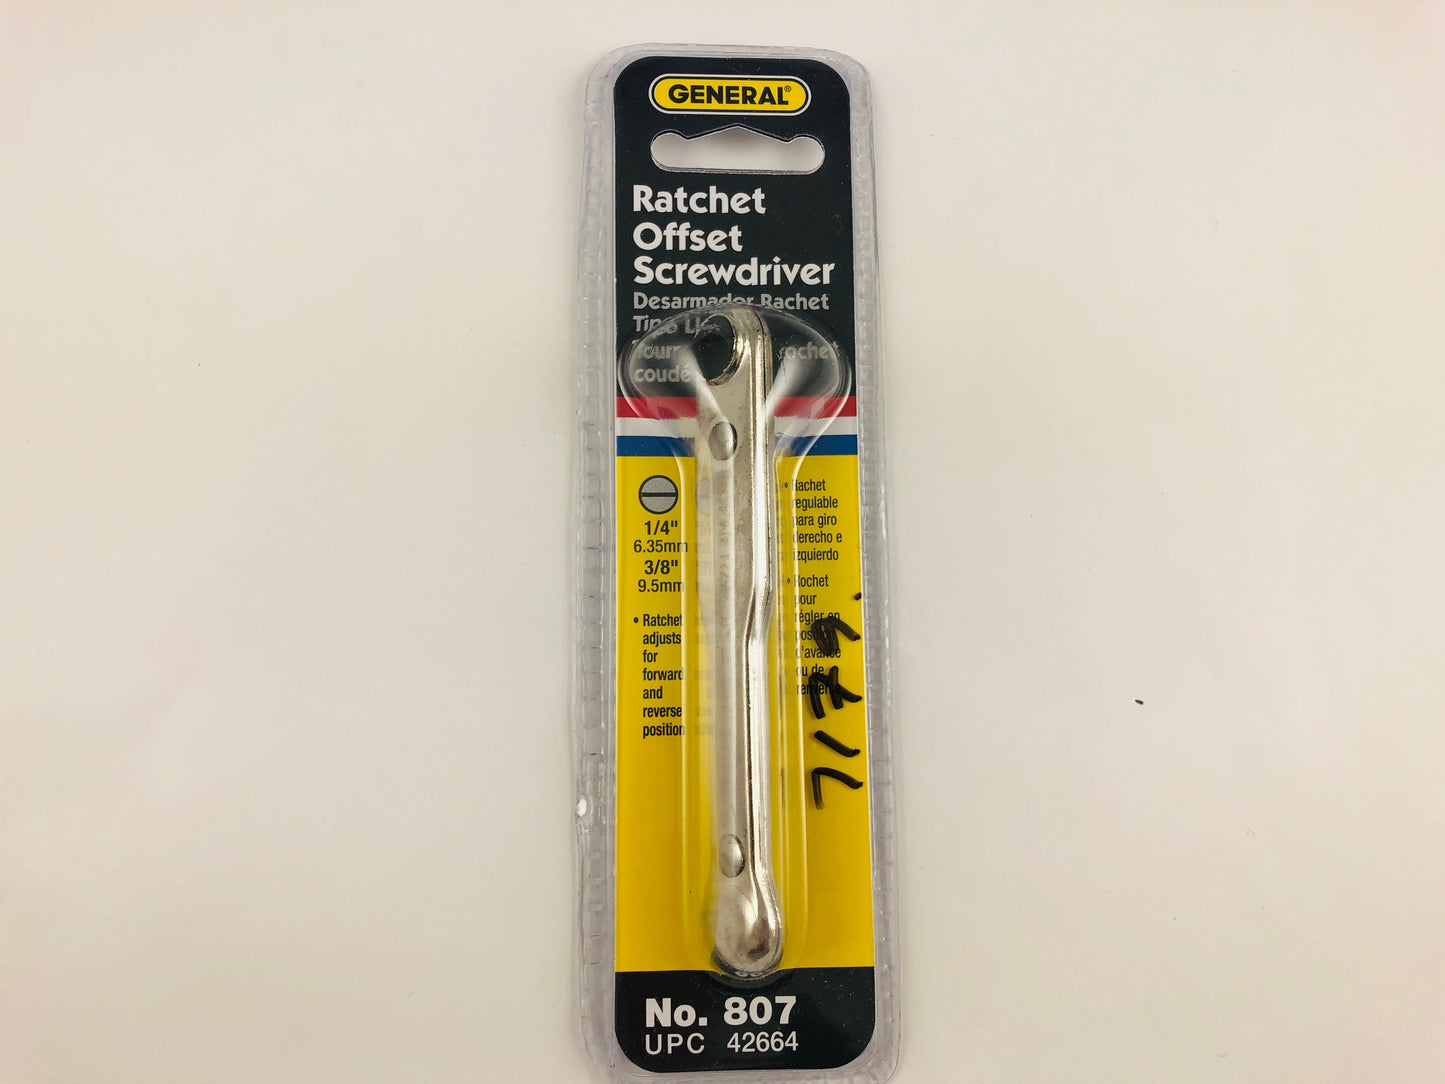 Ratchet offset screwdriver